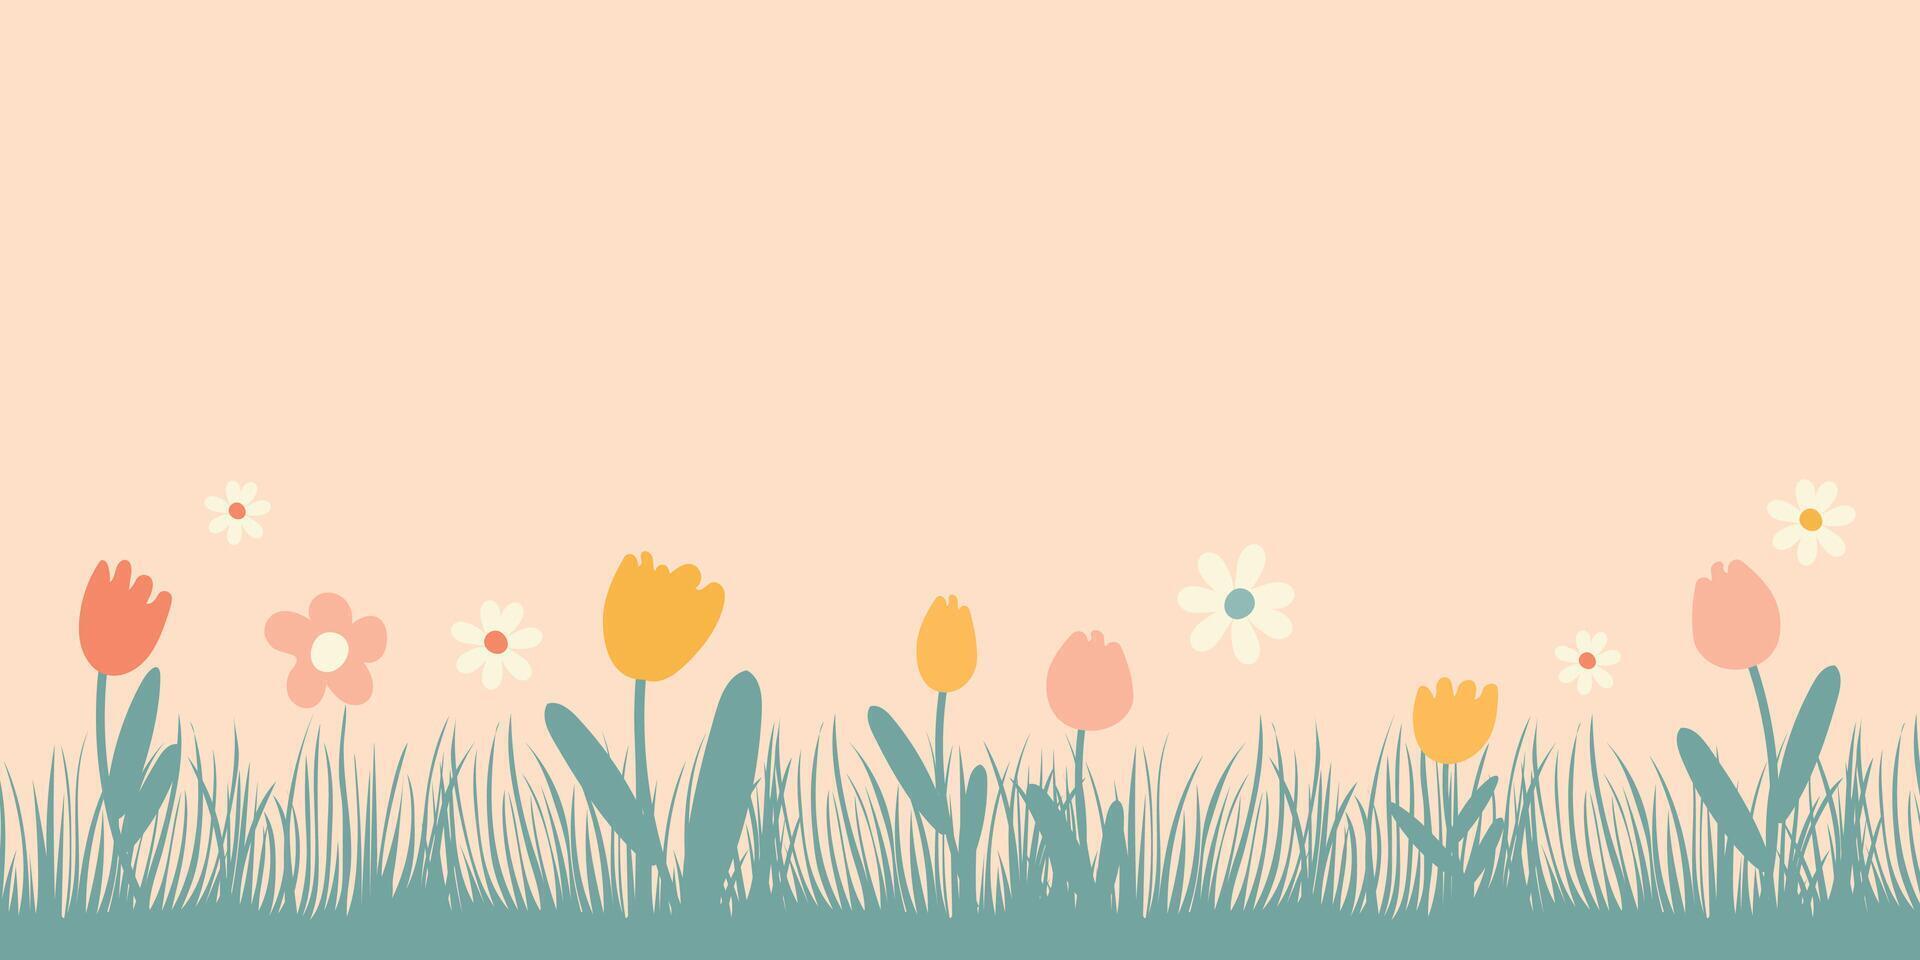 Frühling Hintergrund mit Platz zum Text. Vektor Illustration mit Gras und Blumen.